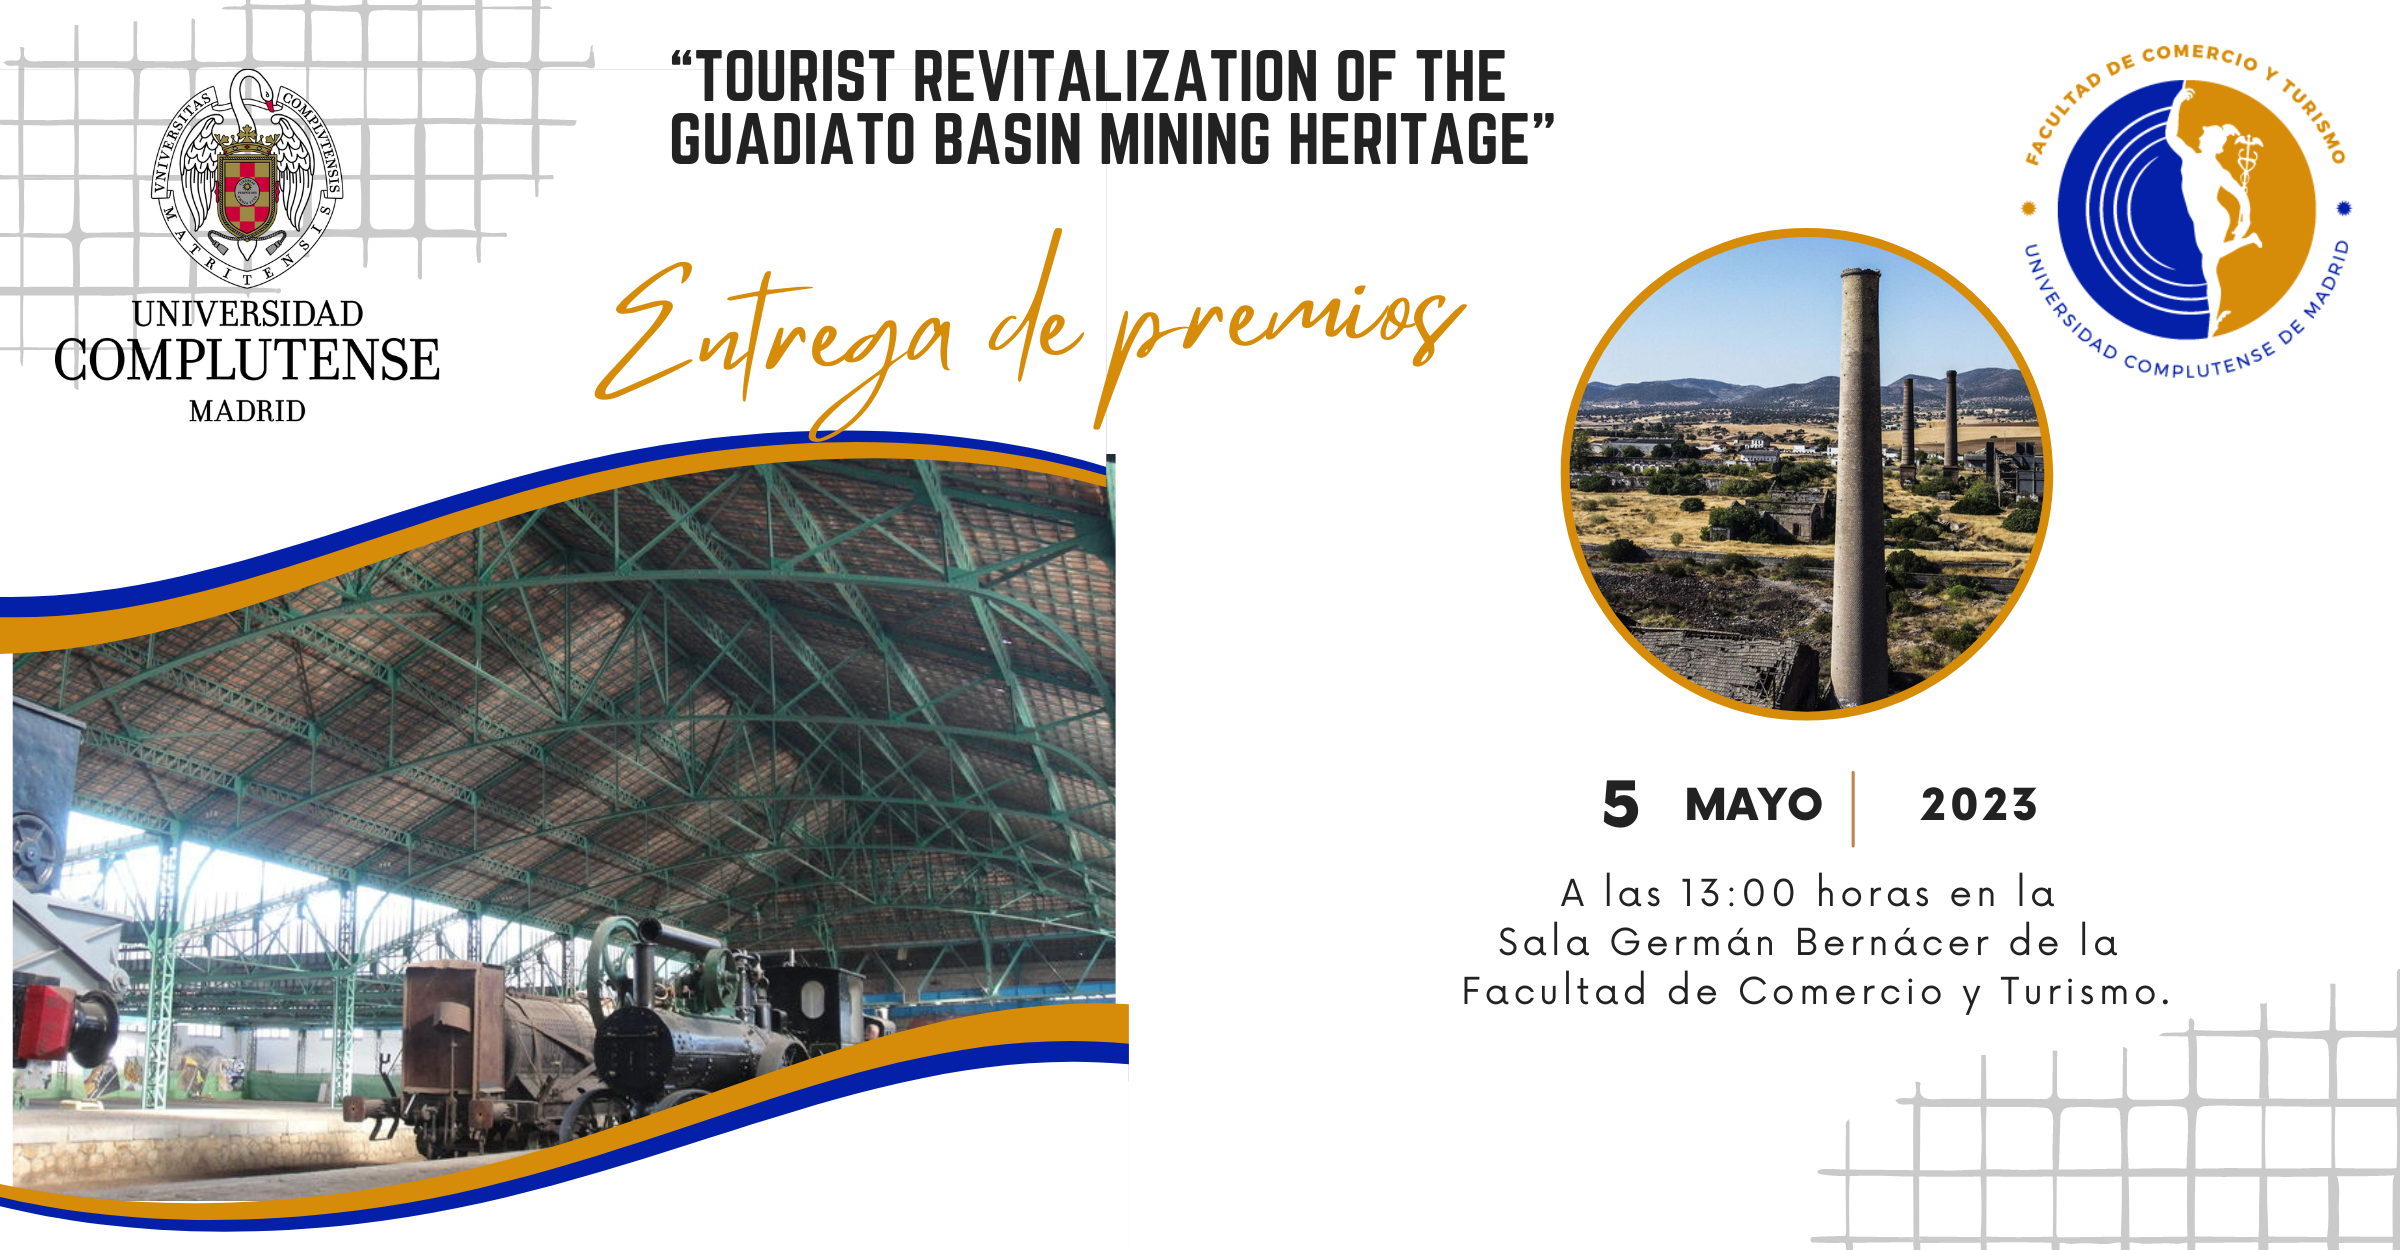 Tourist revitalization of the Guadiato basin mining heritage - 1